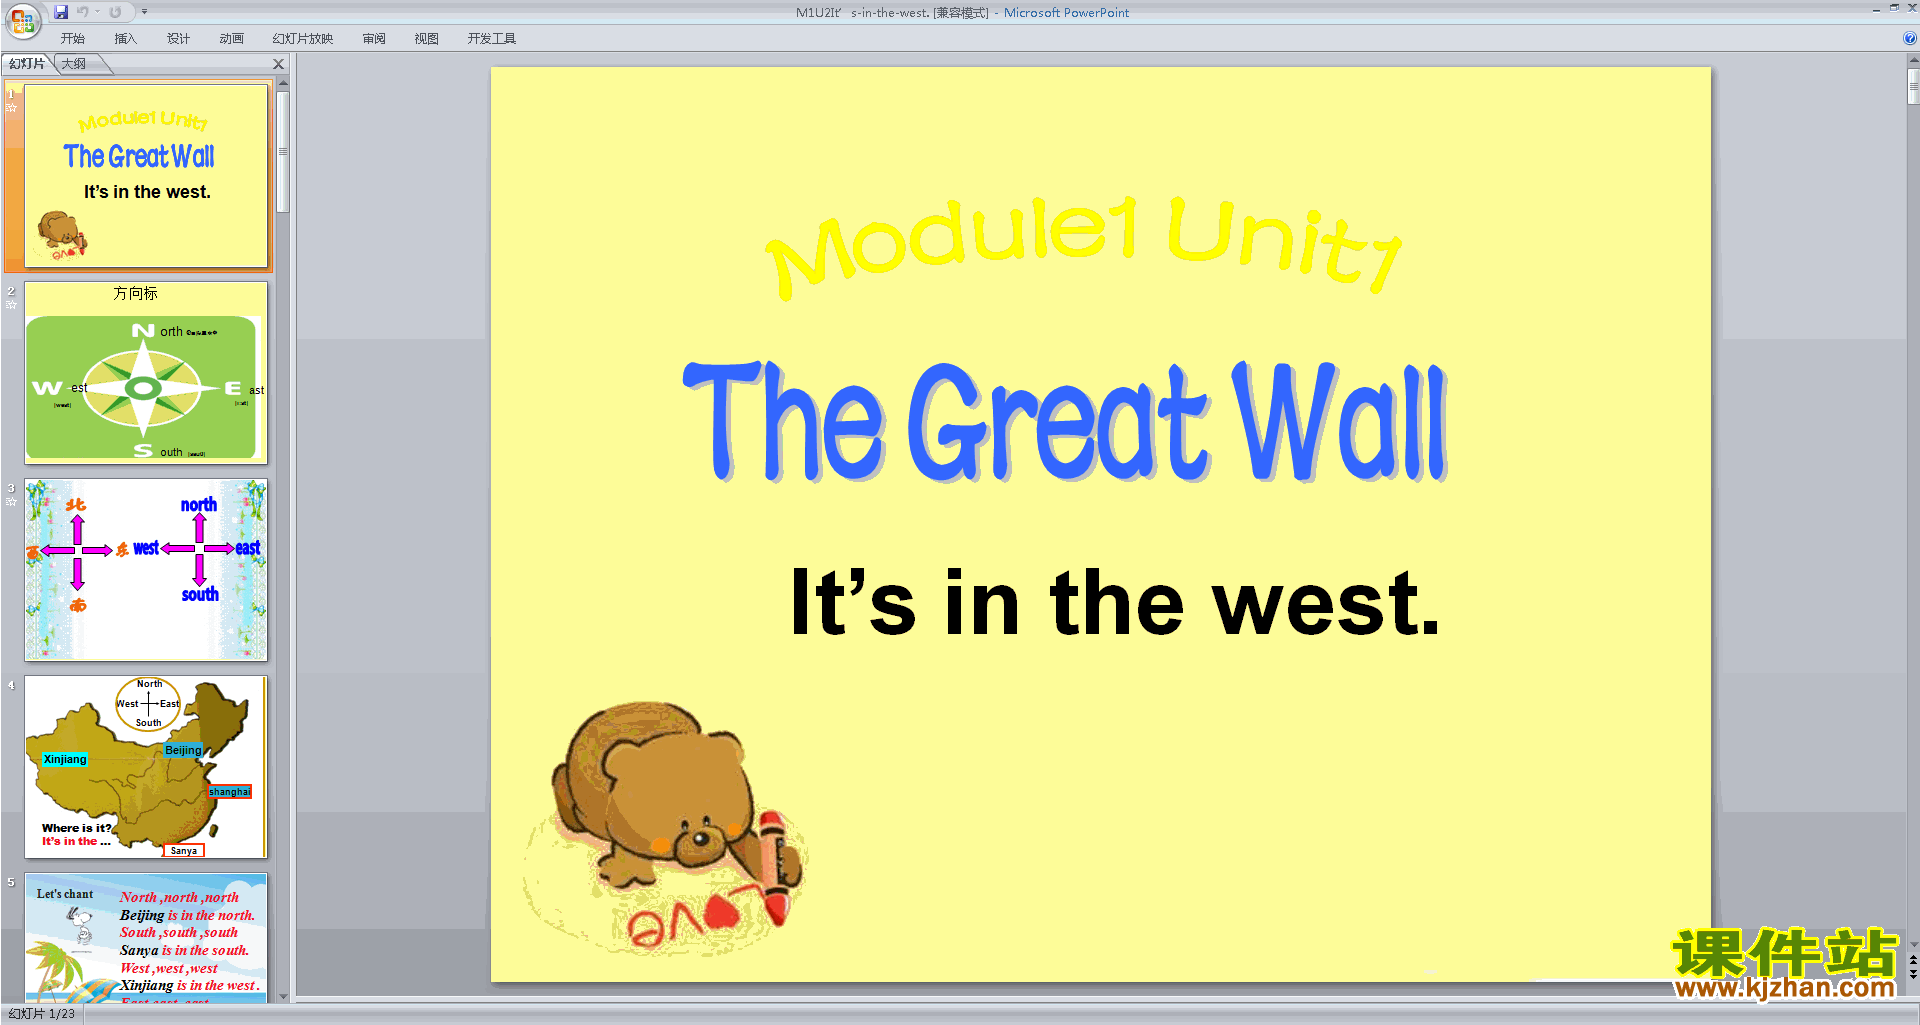 аӢ﹫Module1 Unit2 It